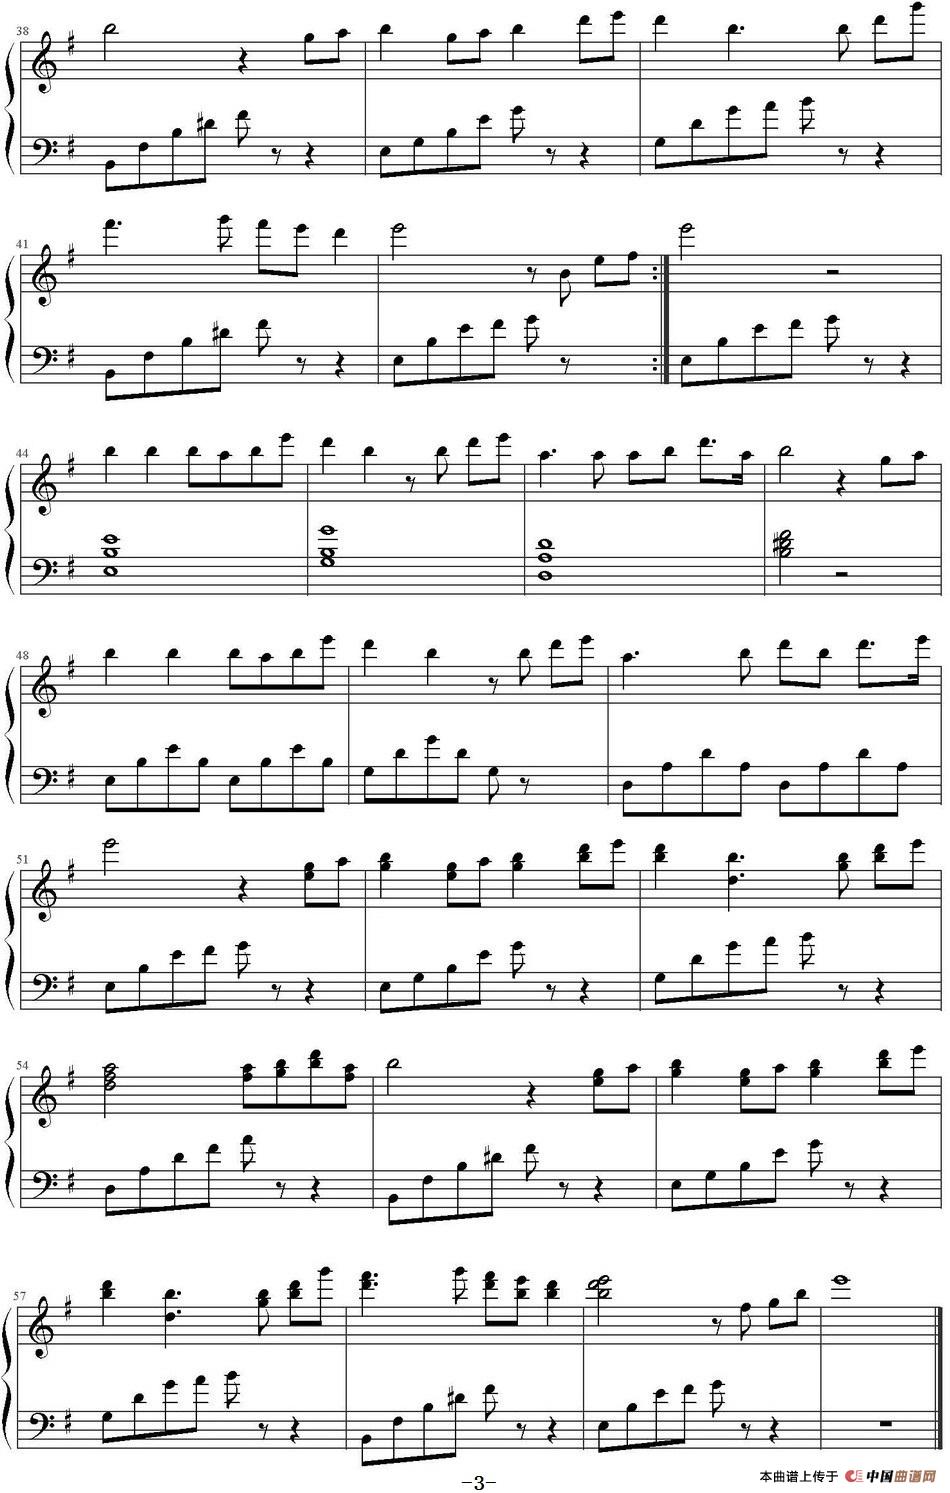 《啦啦啦》钢琴曲谱图分享